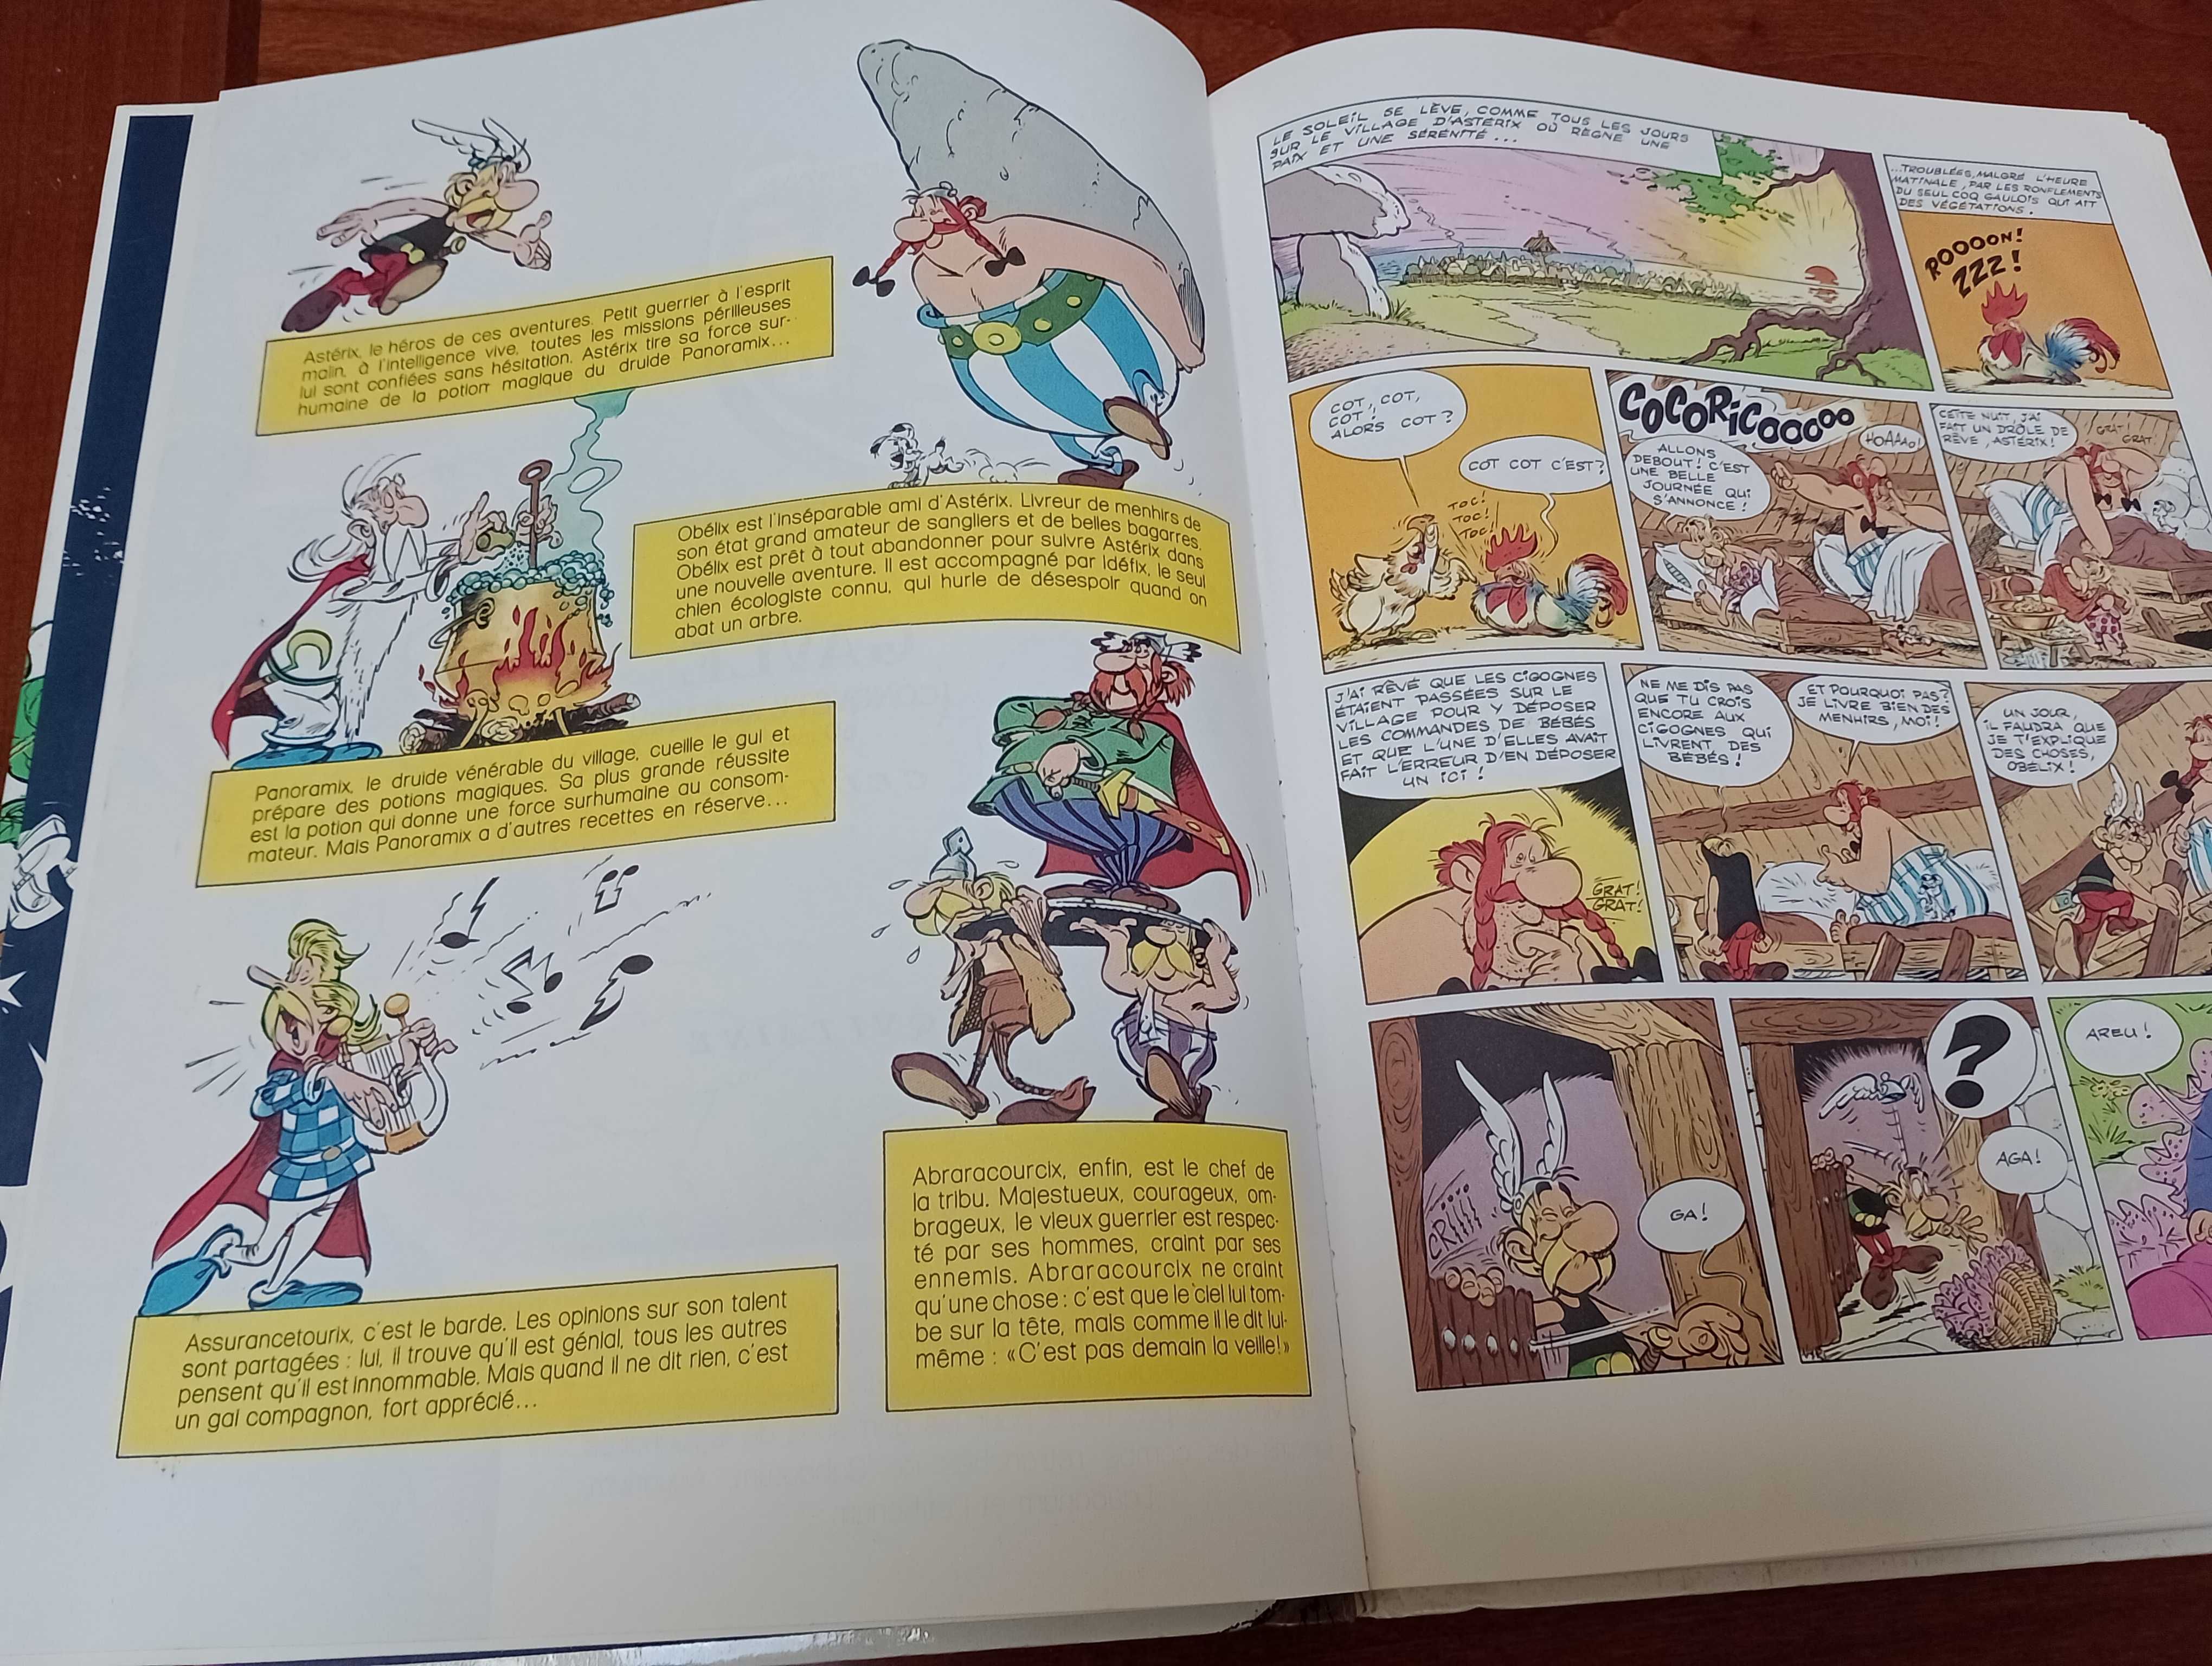 Le fils d' Asterix texte et dressing de uderzo komiks